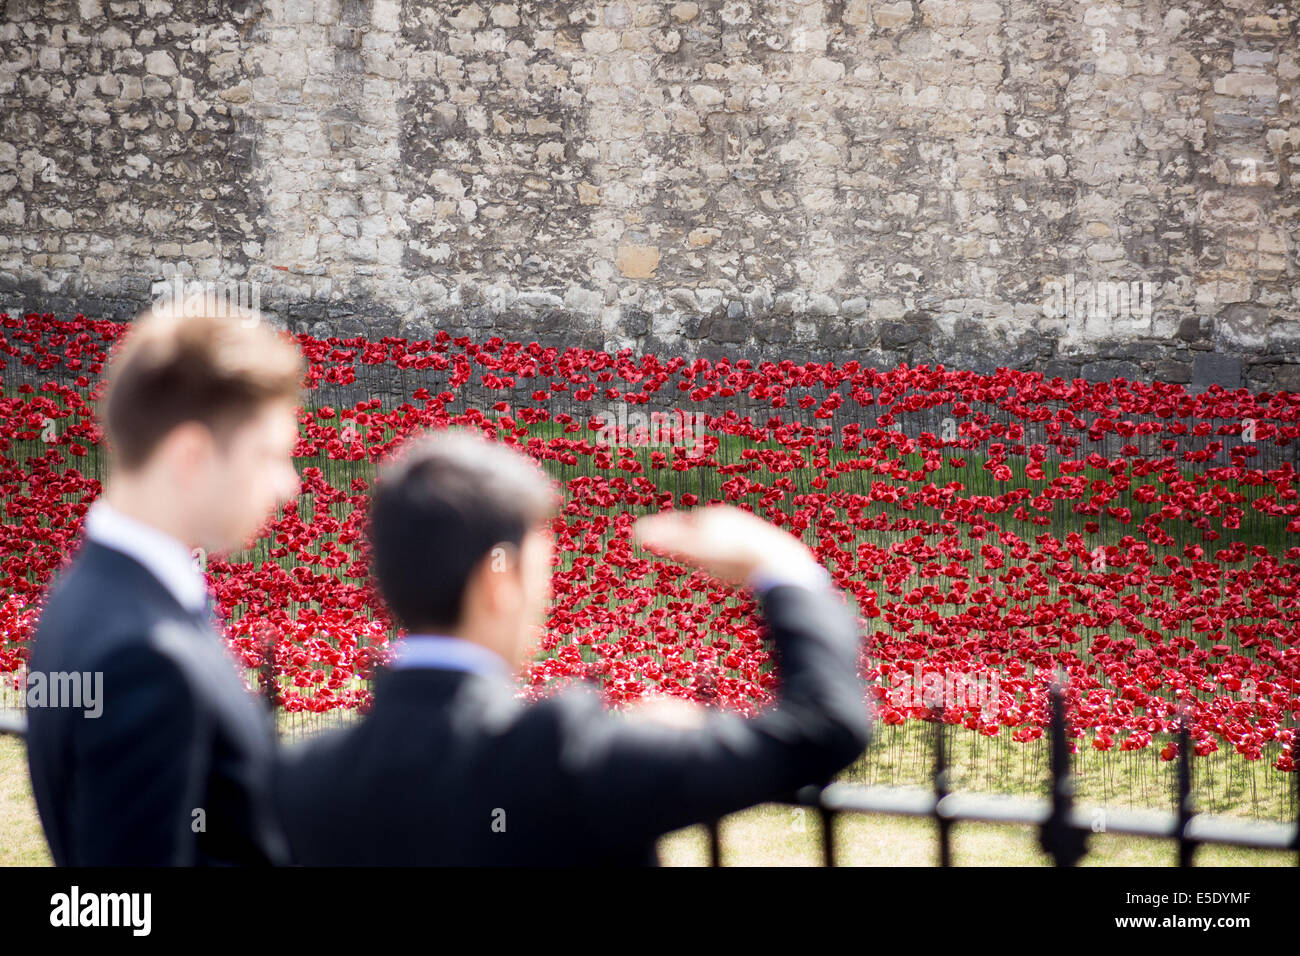 Londres, Royaume-Uni. 29 juillet, 2014. Coquelicots en céramique plantés à tour de Londres à l'occasion de la Première Guerre mondiale morts Crédit : Guy Josse/Alamy Live News Banque D'Images